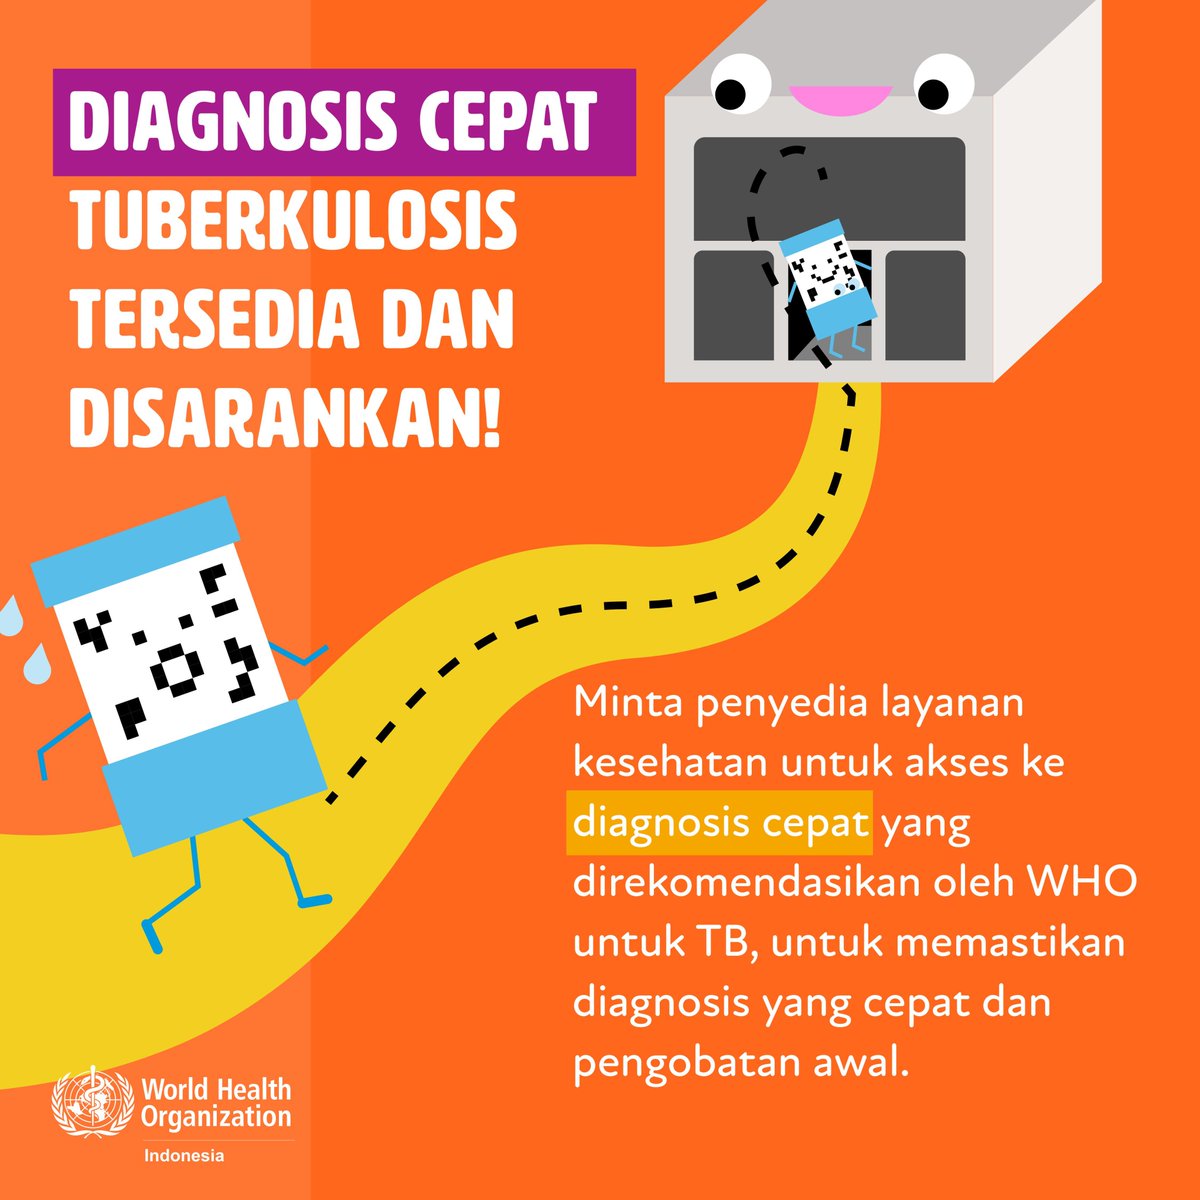 Jangan Tunda! Dapatkan Diagnosis Cepat Tuberkulosis Sekarang! 🩺💡 Segera minta penyedia layanan kesehatan untuk akses ke diagnosis cepat yang direkomendasikan oleh WHO untuk TB. #EndTB #SehatUntukSemua